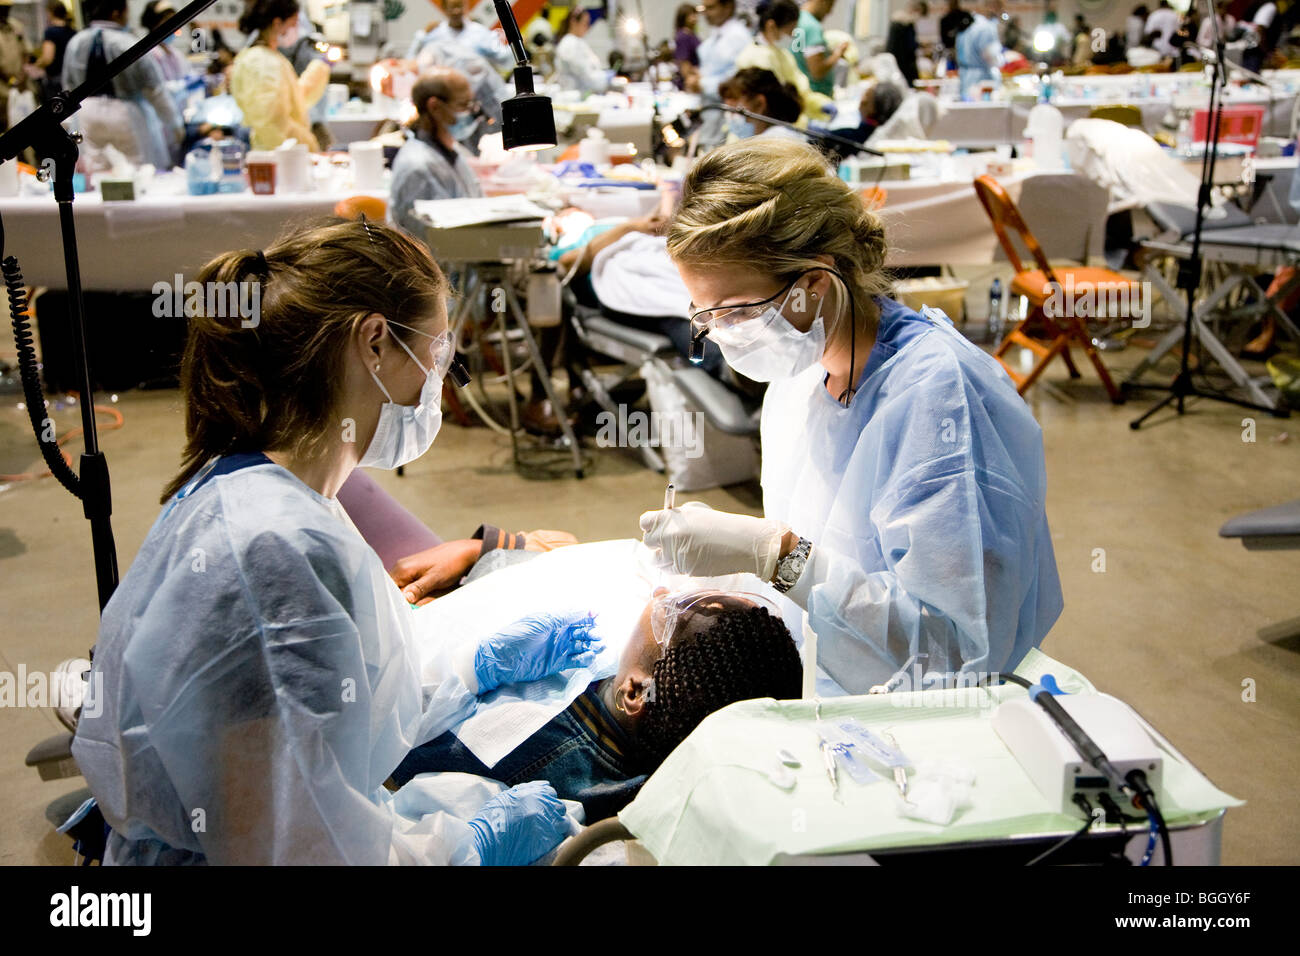 Clinique dentaire et de santé gratuits par Remote Area Medical durant la semaine du 19 août 2009, Los Angeles, CA Banque D'Images